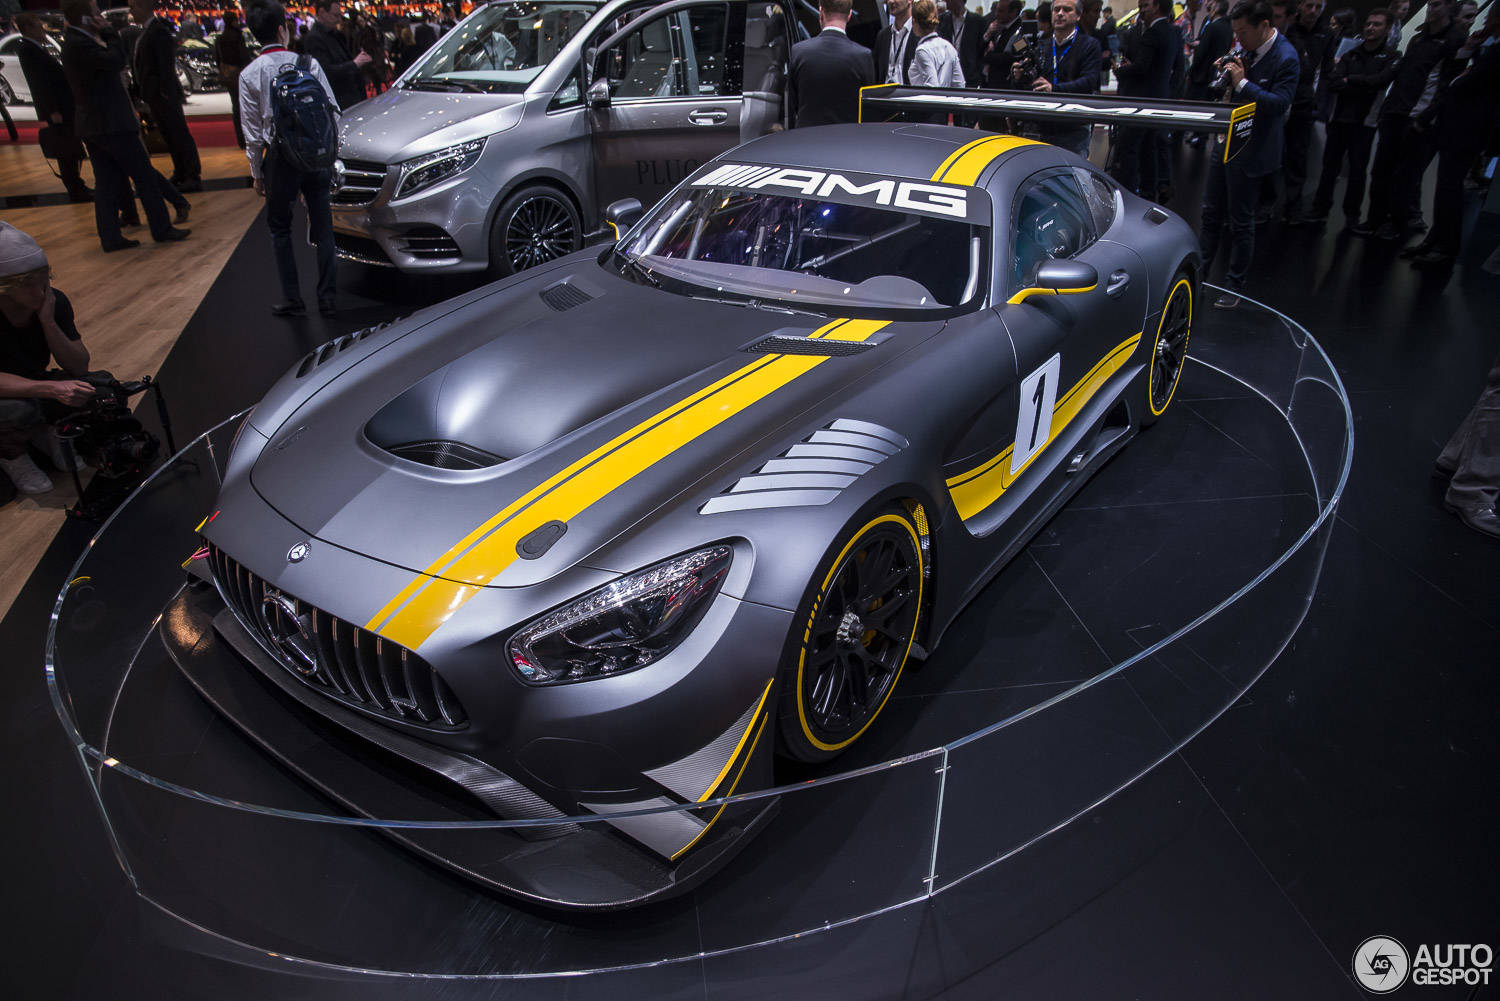 Genève 2015: Mercedes-AMG GT3